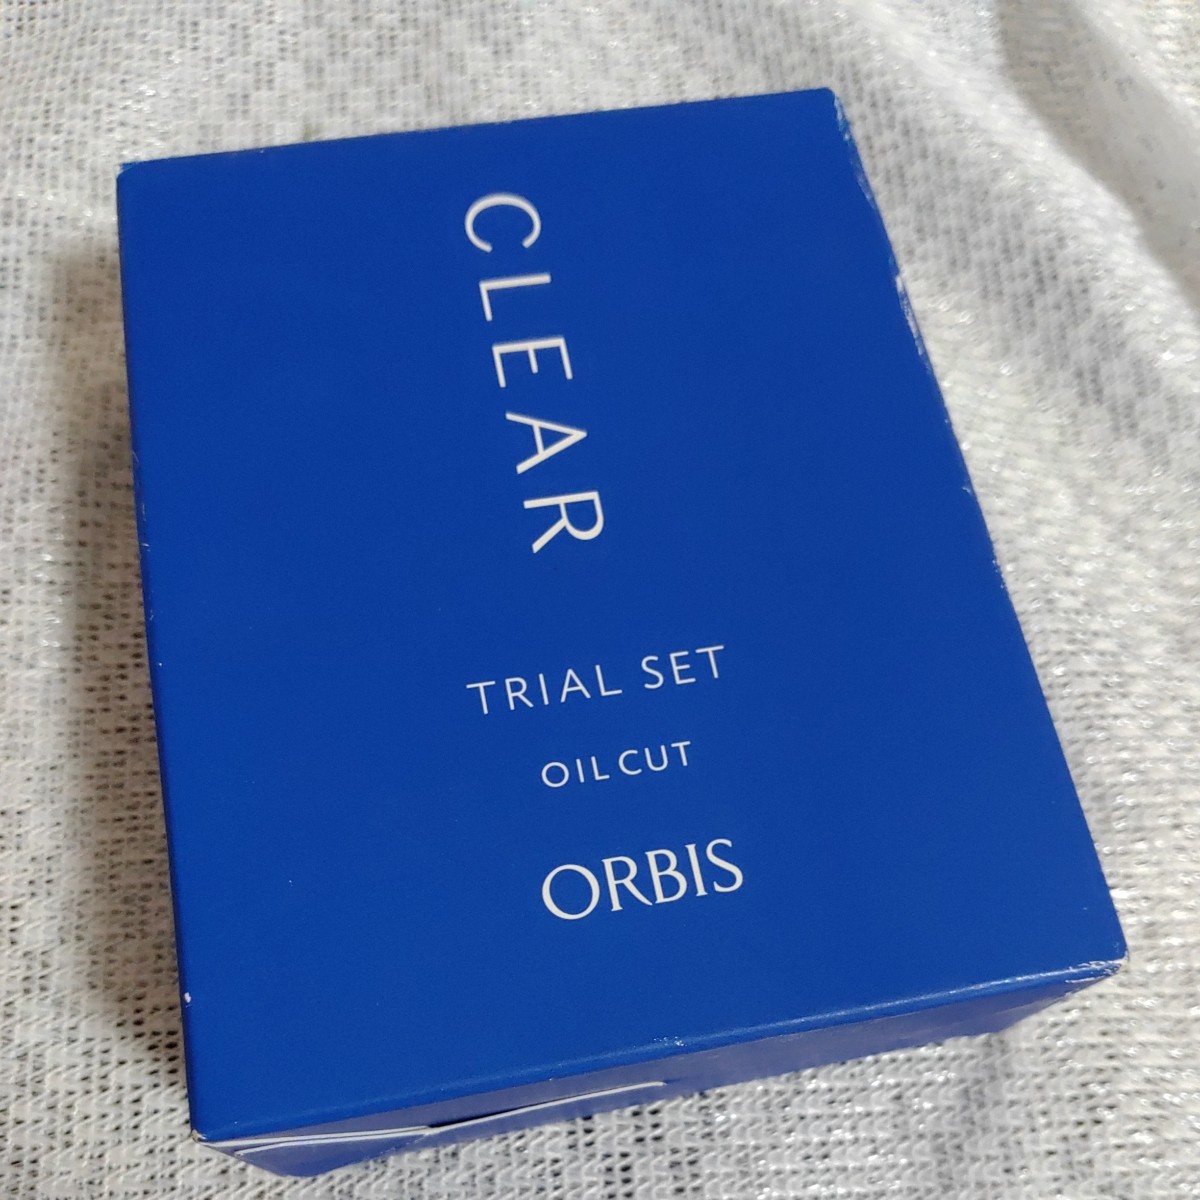 [Не открыто] ПРОБНЫЙ НАБОР ORBIS CLEAR Пробный набор Orbis Clear Пробный набор Уход за прыщами Влажный тип Нормальная кожа ~ Сухая кожа 1116-D4-SA7